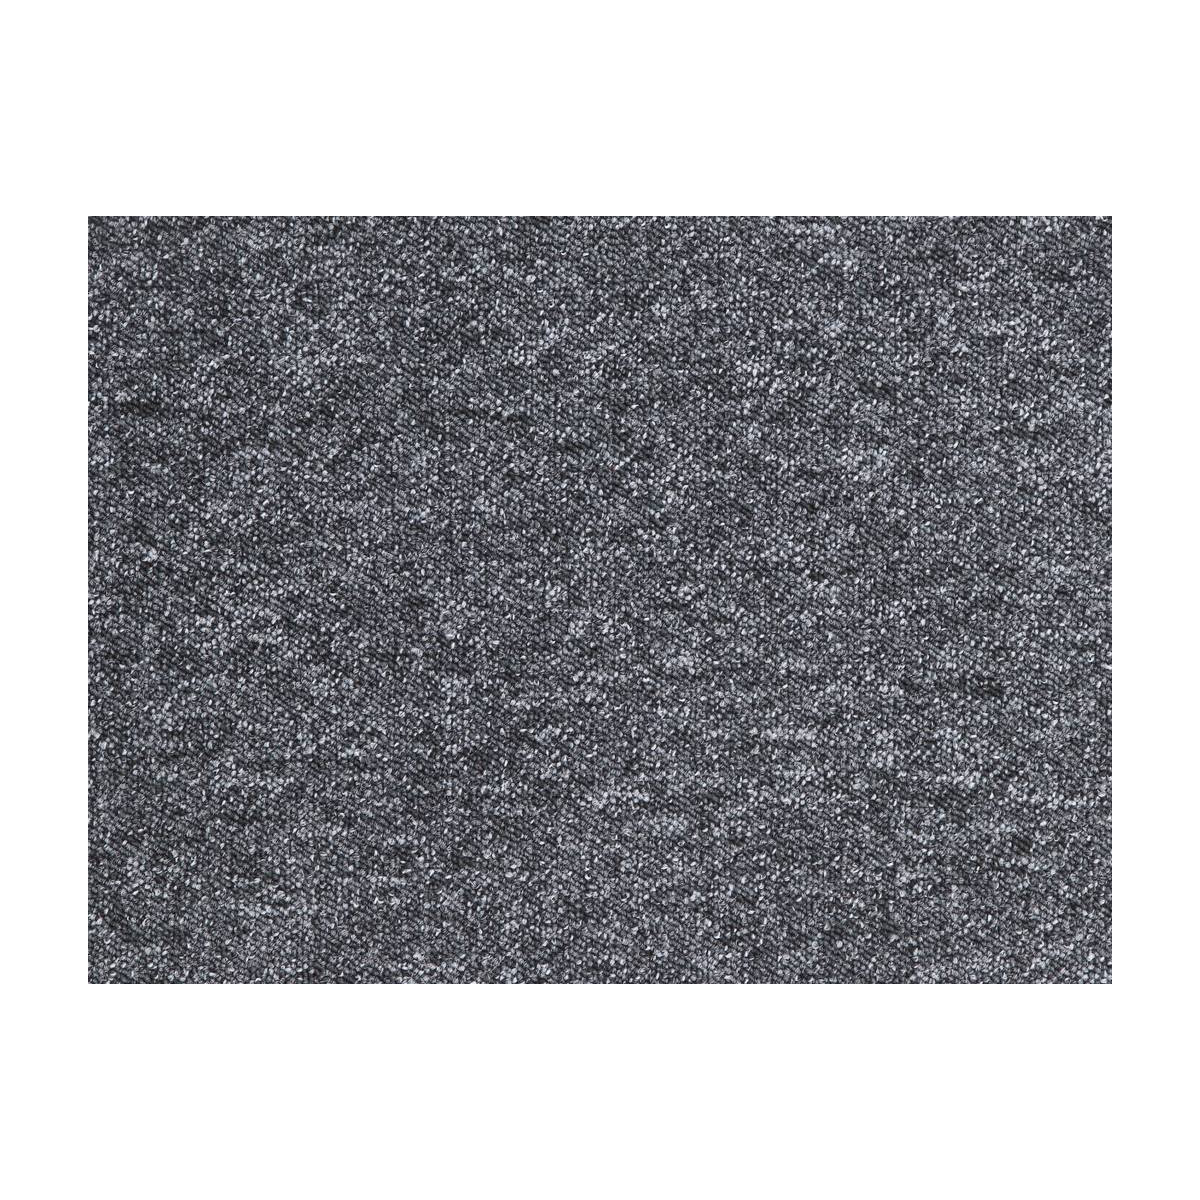 AKCE: 130x190 cm Metrážový koberec Extreme 77, zátěžový